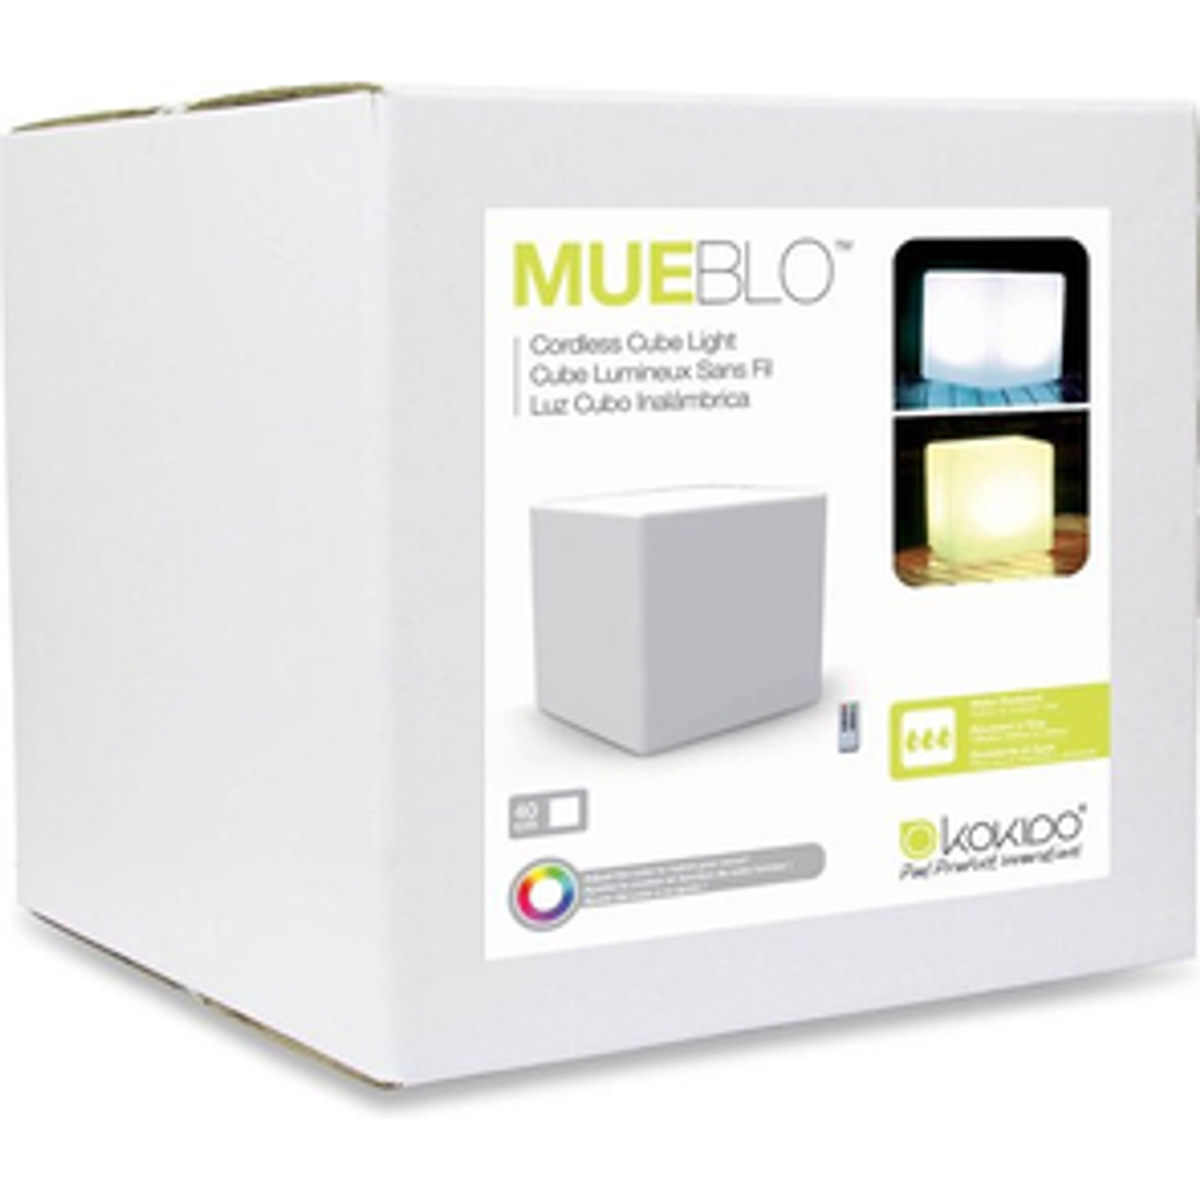 MUEBLO Illuminated Cube - 40cm